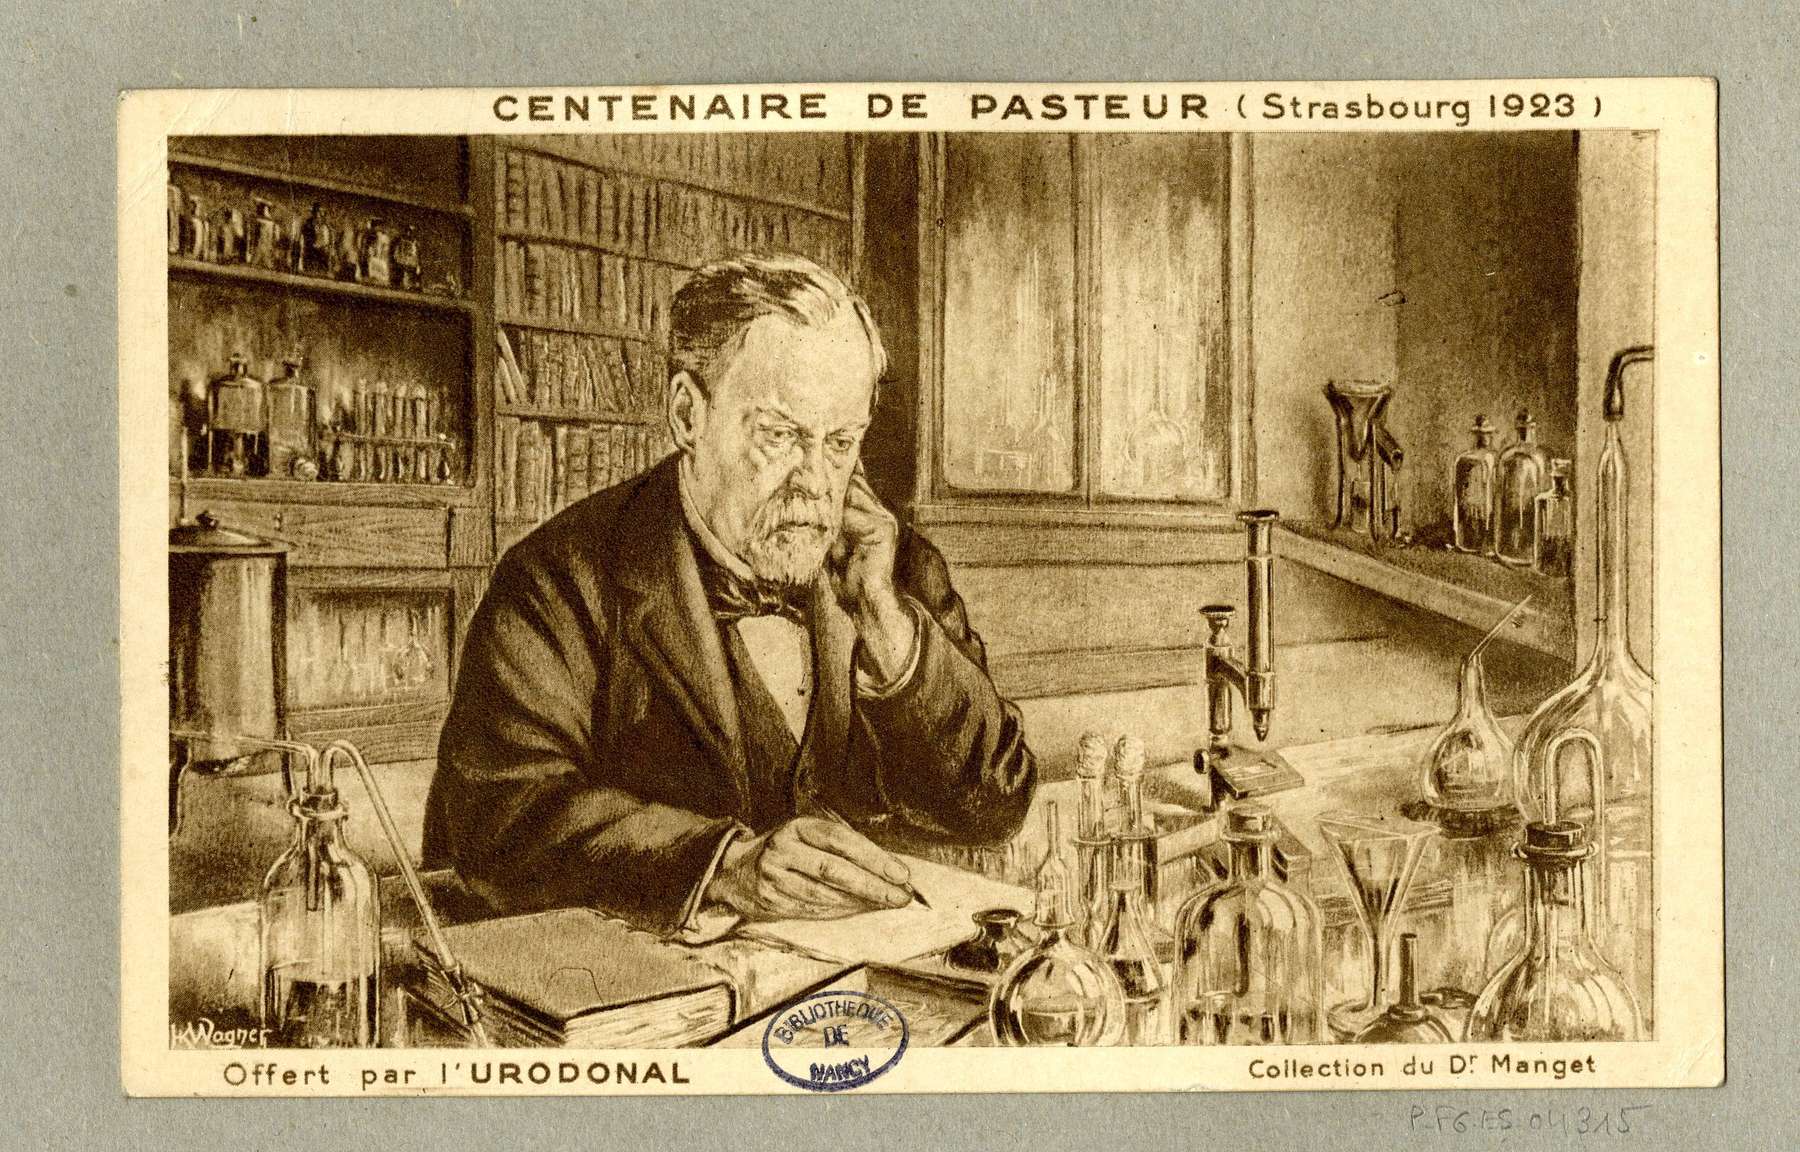 Contenu du Centenaire de Pasteur